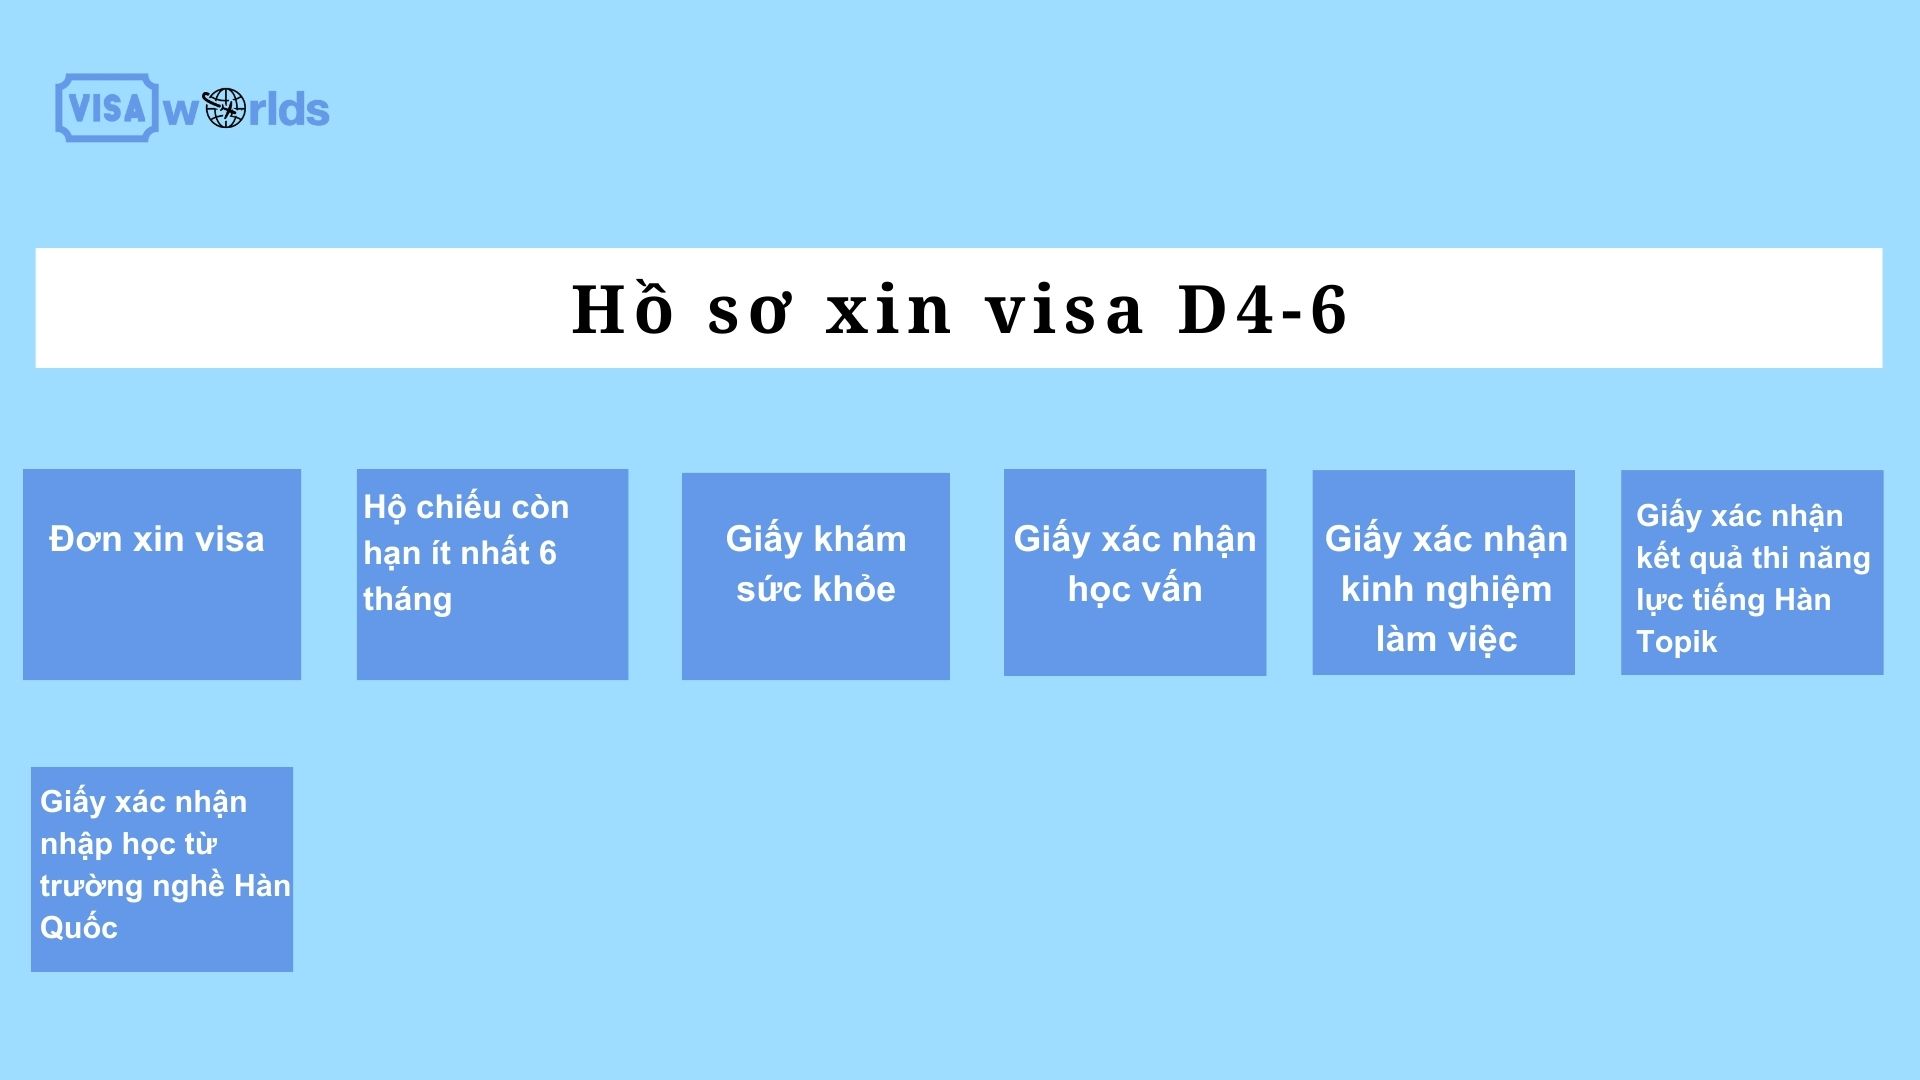 Hồ sơ xin visa D4-6